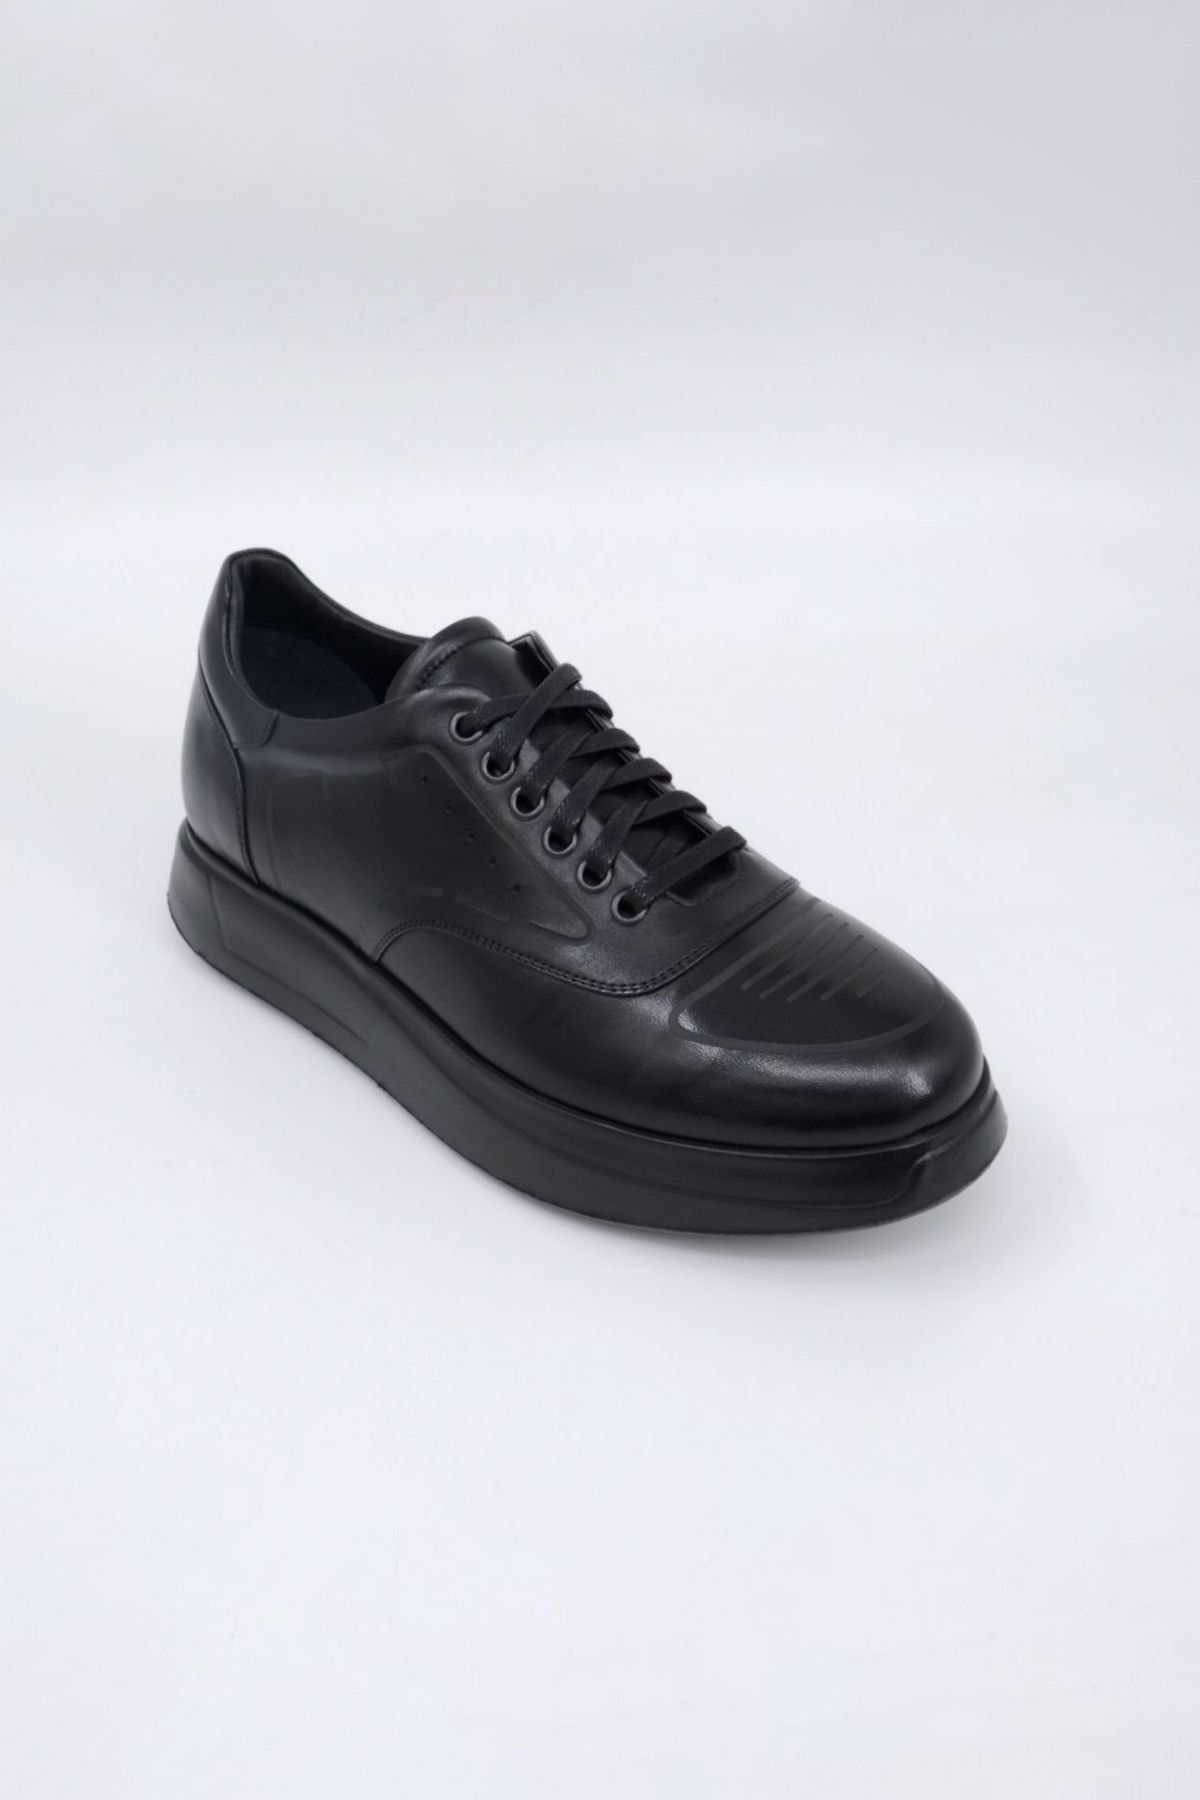 Trust Shoes Bağcıklı Siyah Erkek Spor Ayakkabı